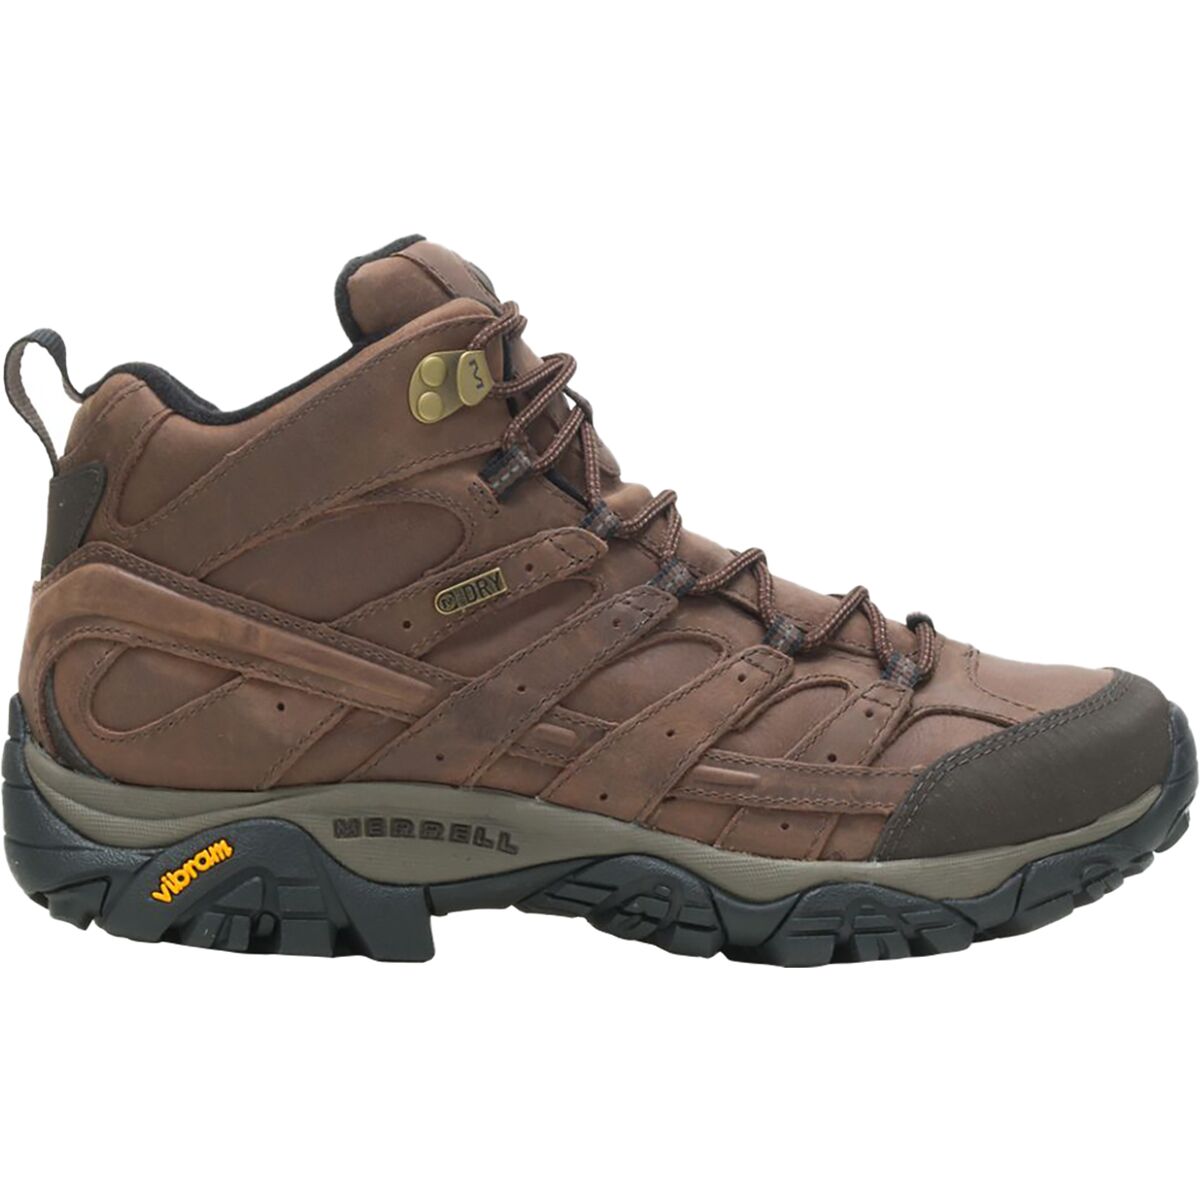 Merrell Moab 2 Prime Mid WP Hiking Boot - Men's